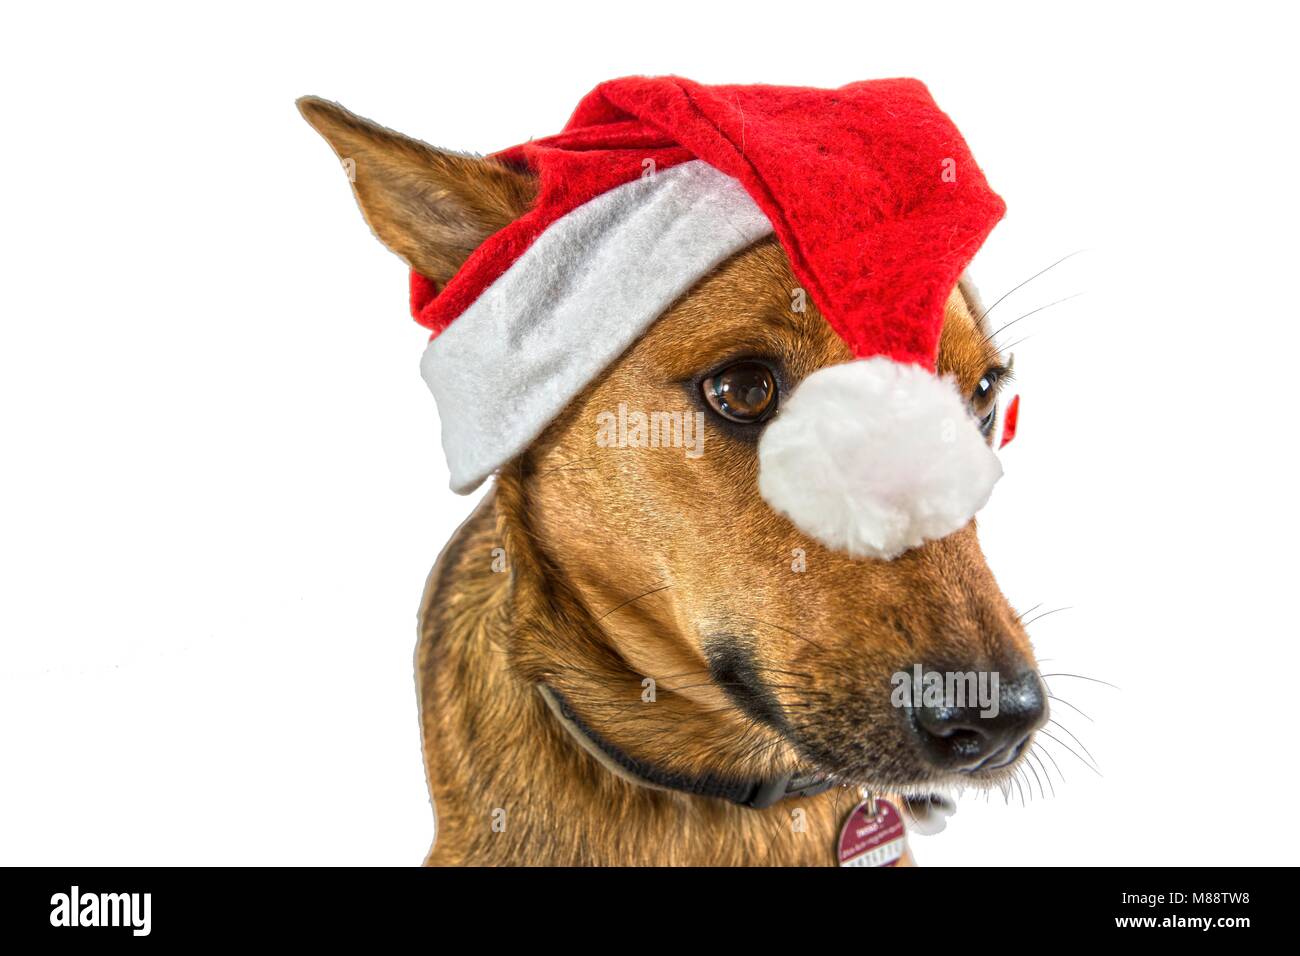 Ein Hund trägt eine Weihnachtsmütze / Nikolausmütze und schaut seitlich an der Kamera vorbei. Der Bommel der rot-weißen Mütze fällt dem Hund auf die N Stock Photo